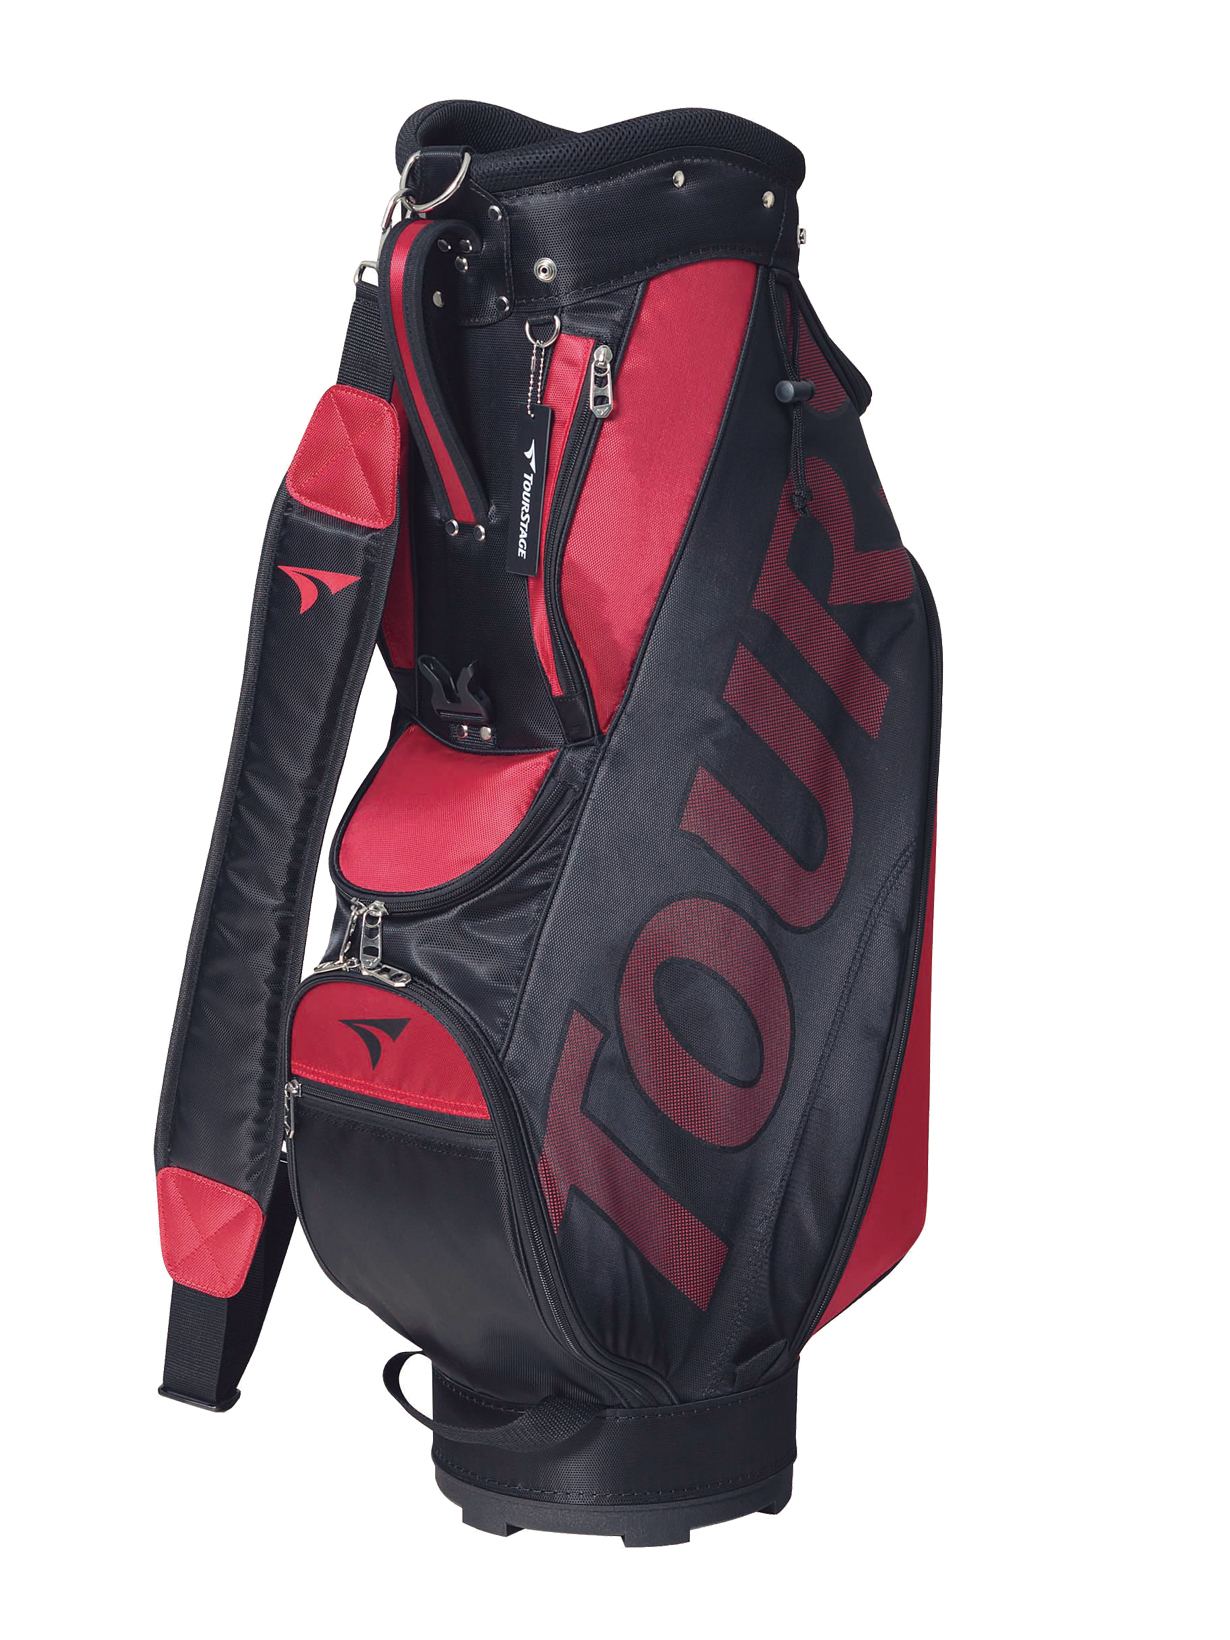 ツアーステージ ゴルフキャディバック 赤黒 新品未使用 - ゴルフバッグ 